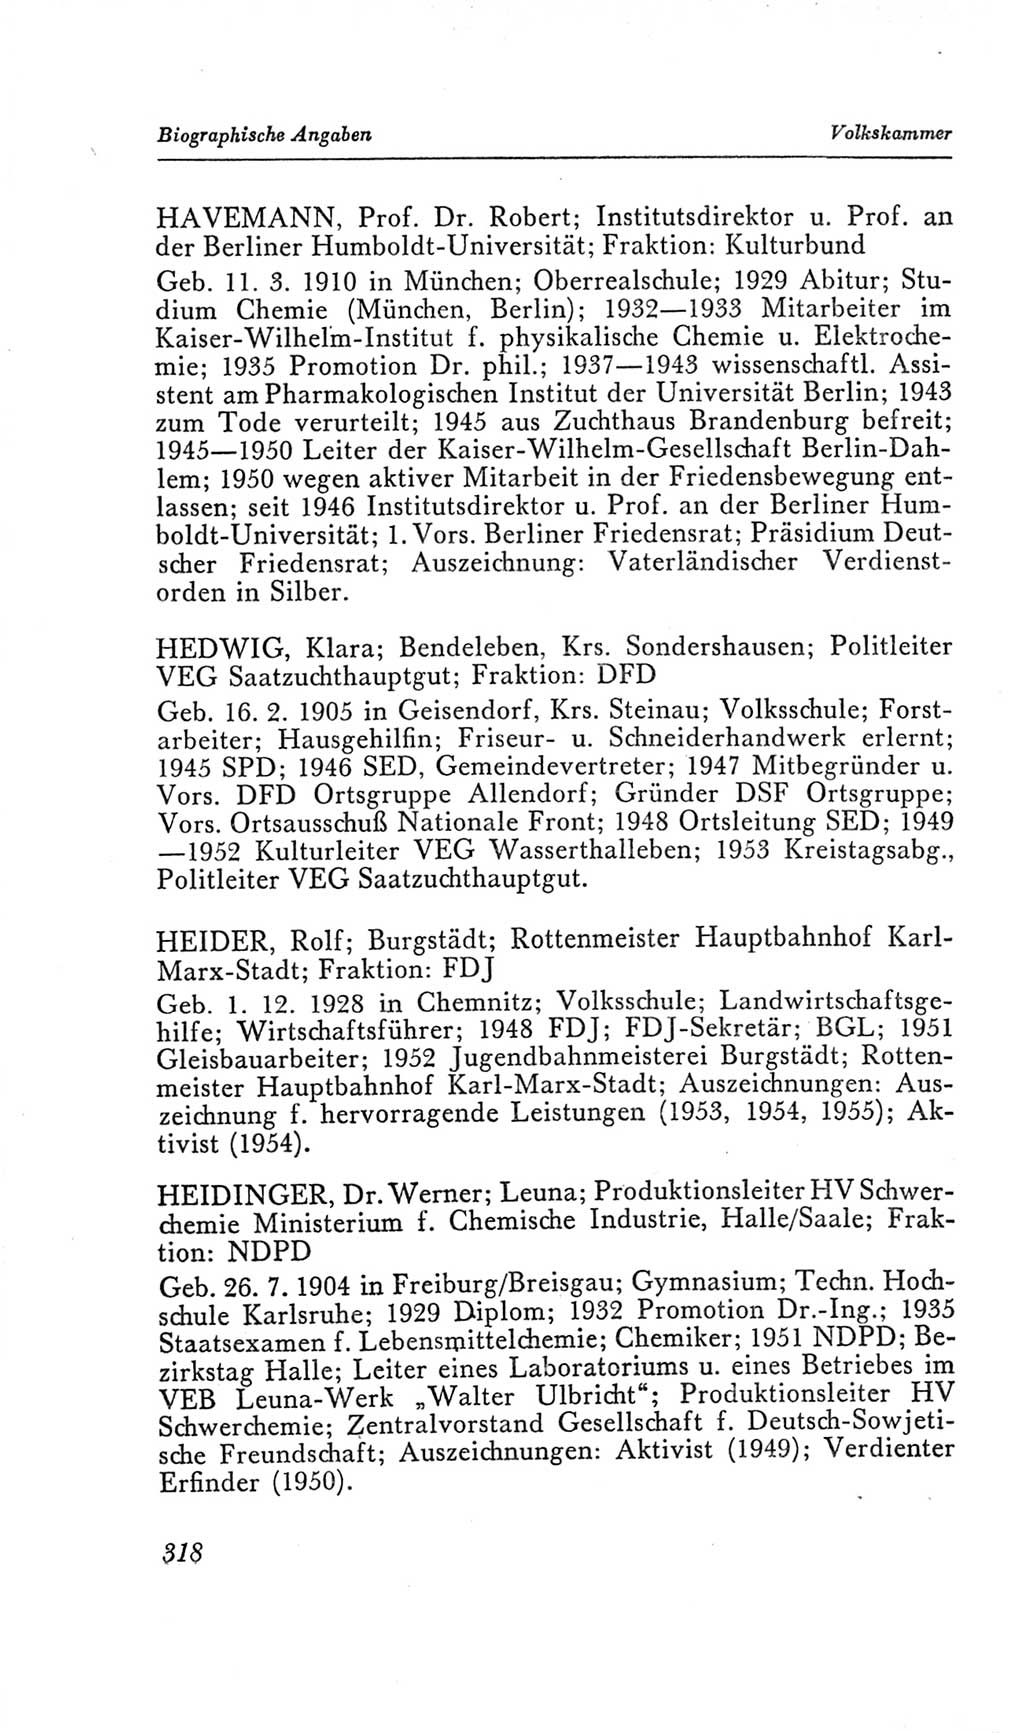 Handbuch der Volkskammer (VK) der Deutschen Demokratischen Republik (DDR), 2. Wahlperiode 1954-1958, Seite 318 (Hdb. VK. DDR, 2. WP. 1954-1958, S. 318)